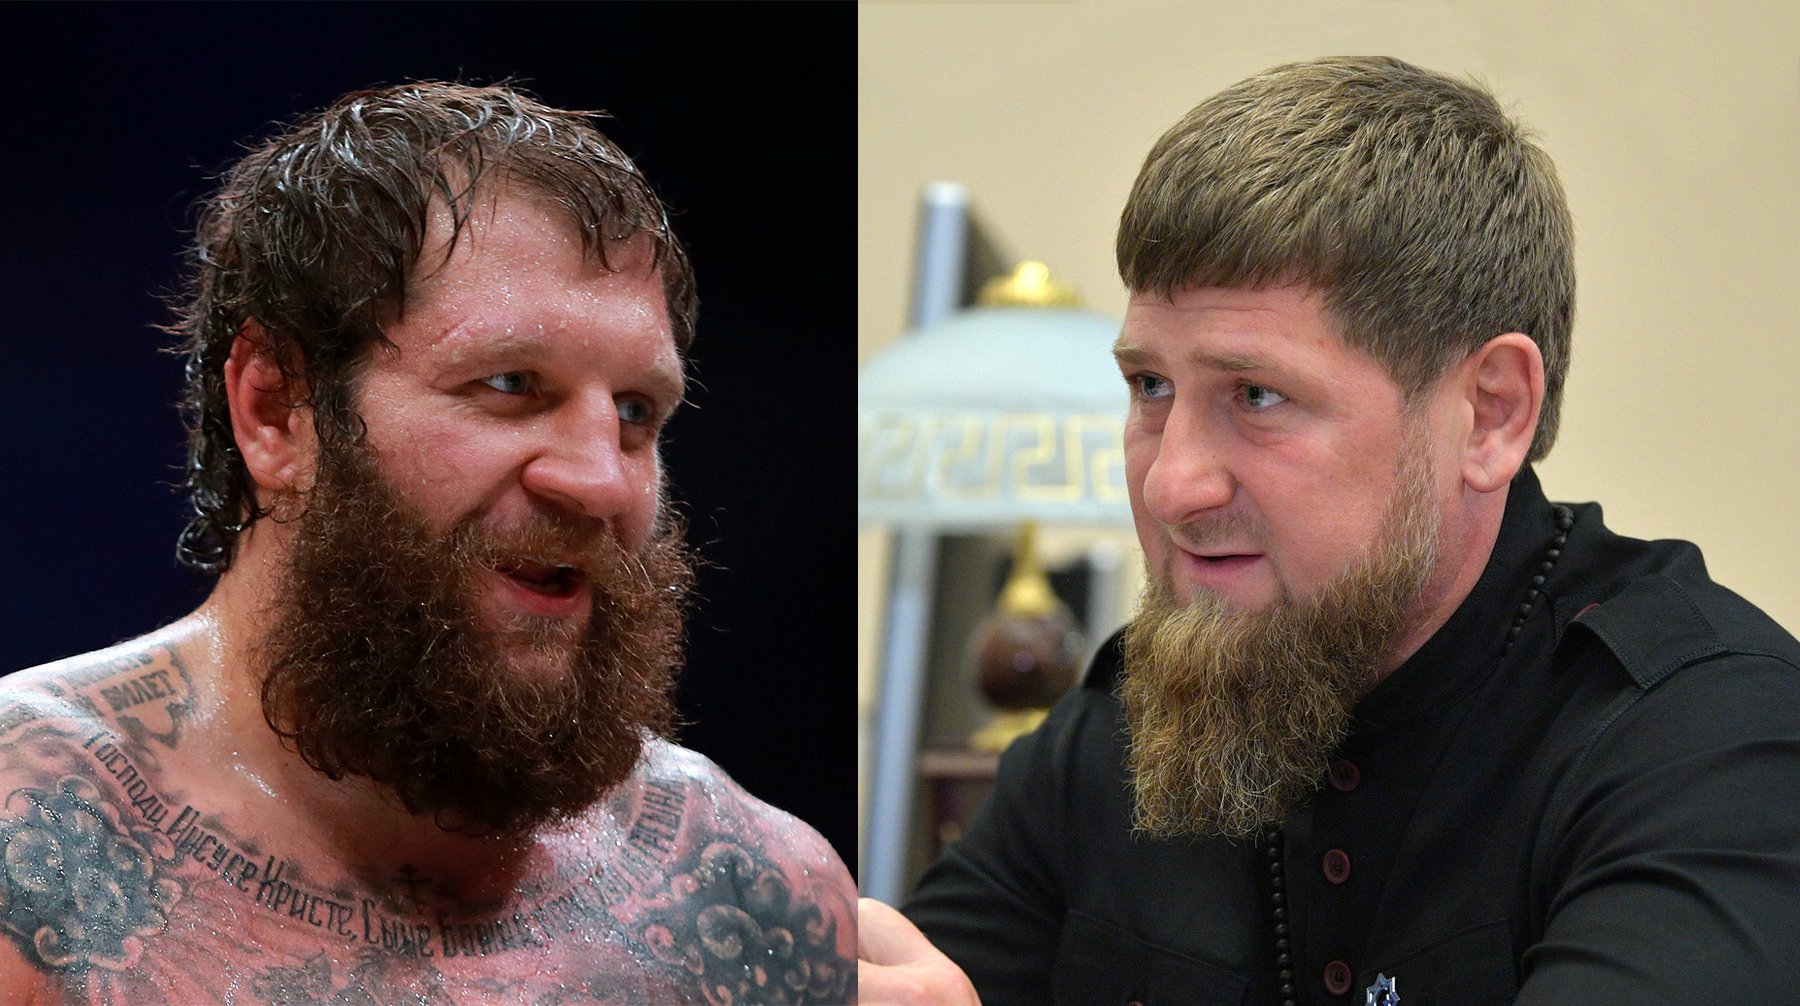 Ранее глава Чечни вызвал спортсмена в шутку на ринг в рамках флэшмоба Фото: © Global Look Press